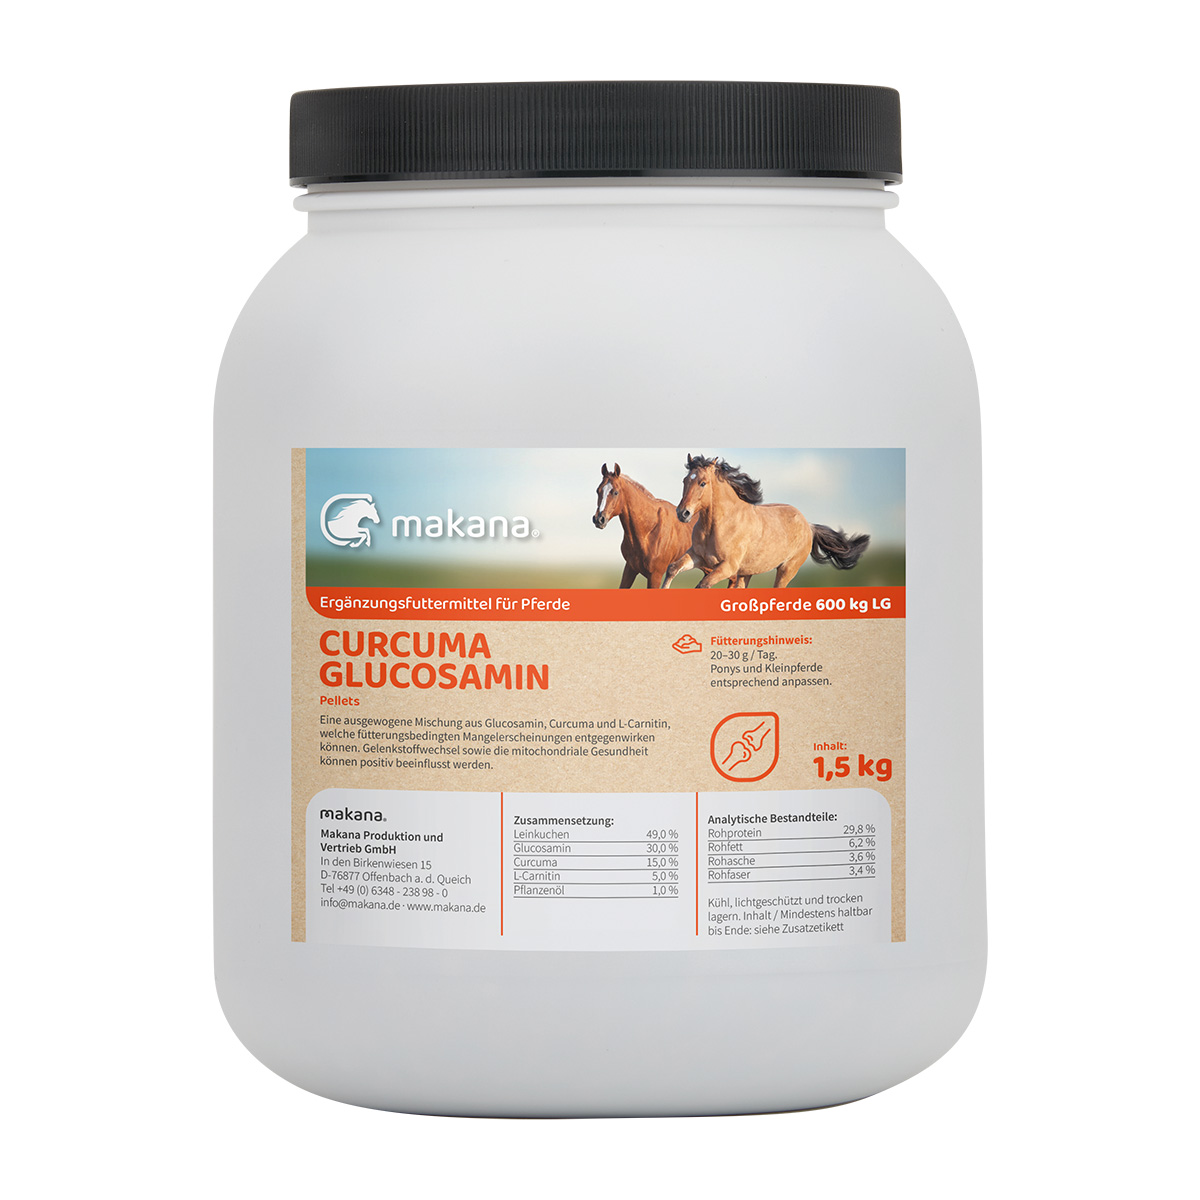 Makana Curcuma Glucosamin Pellets für Pferde, 1,5 kg Dose